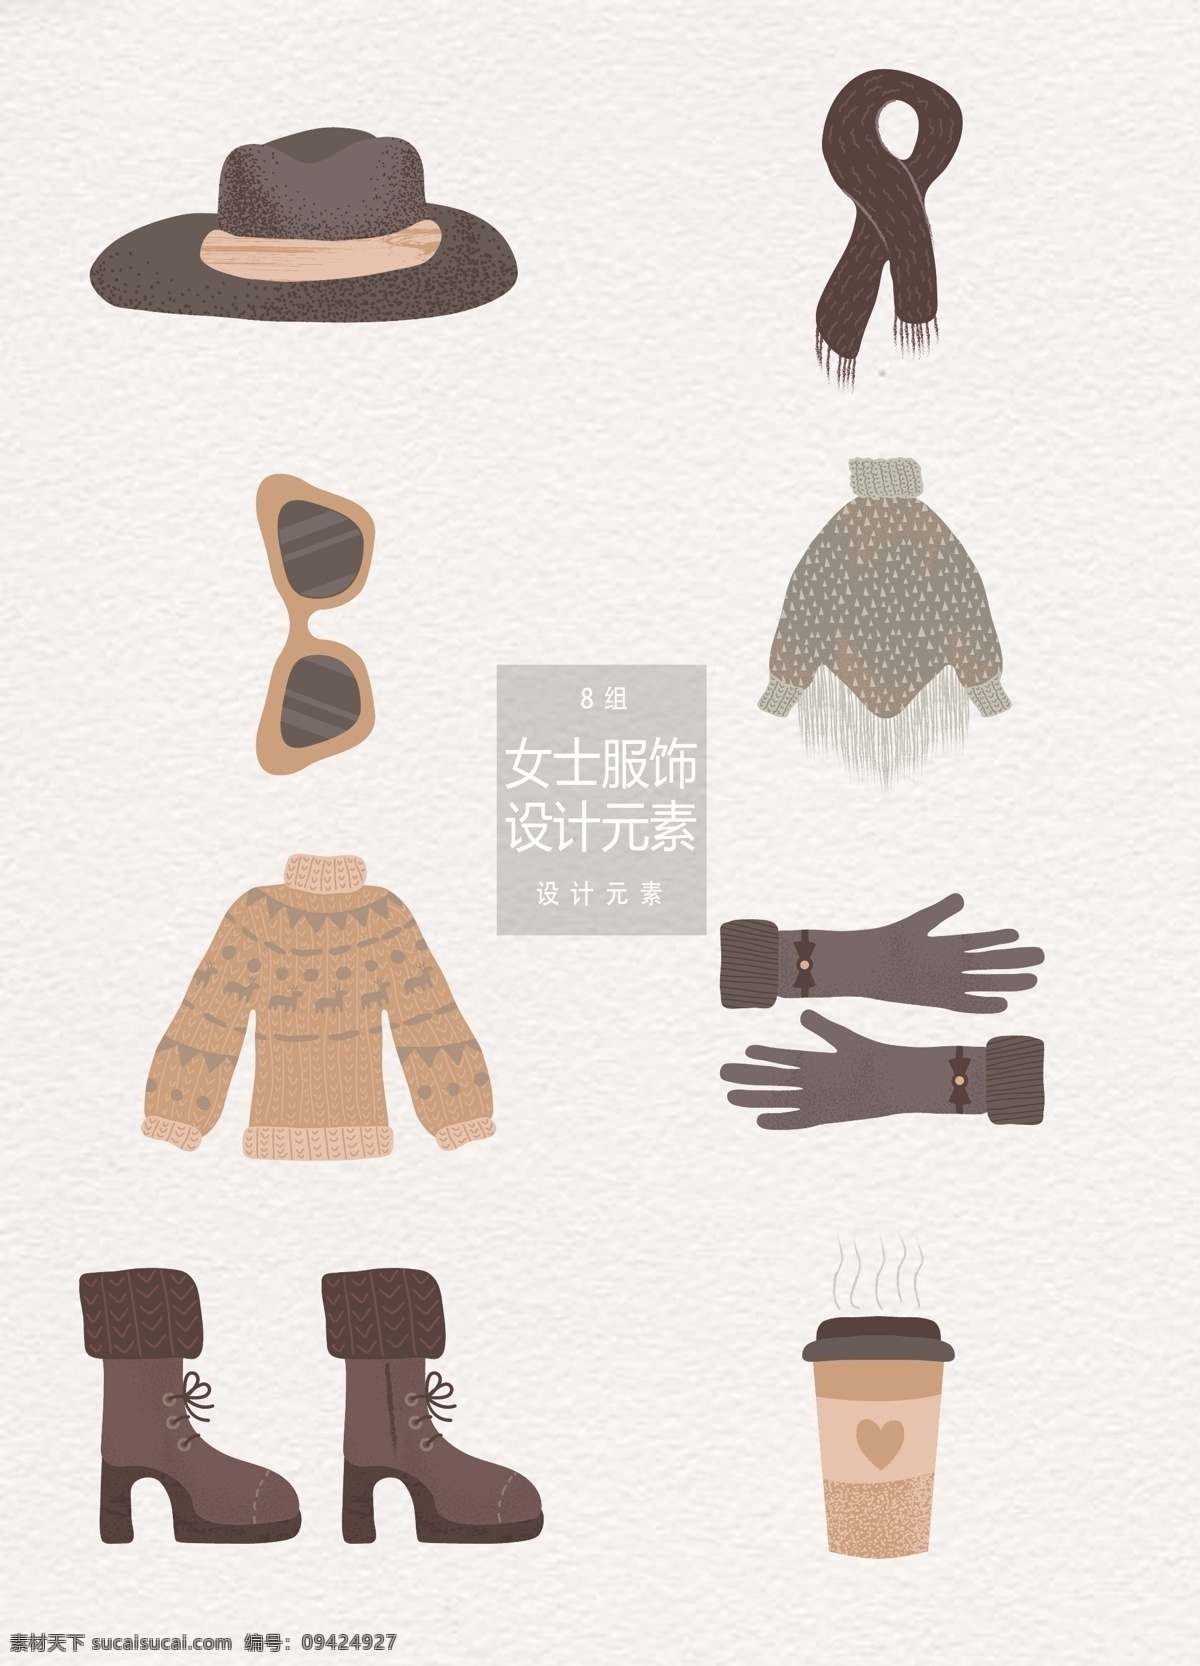 冬季 女士 服饰 元素 冬天 衣服 帽子 围巾 女士服饰 外套 斗篷 靴子 手套 咖啡 毛衣